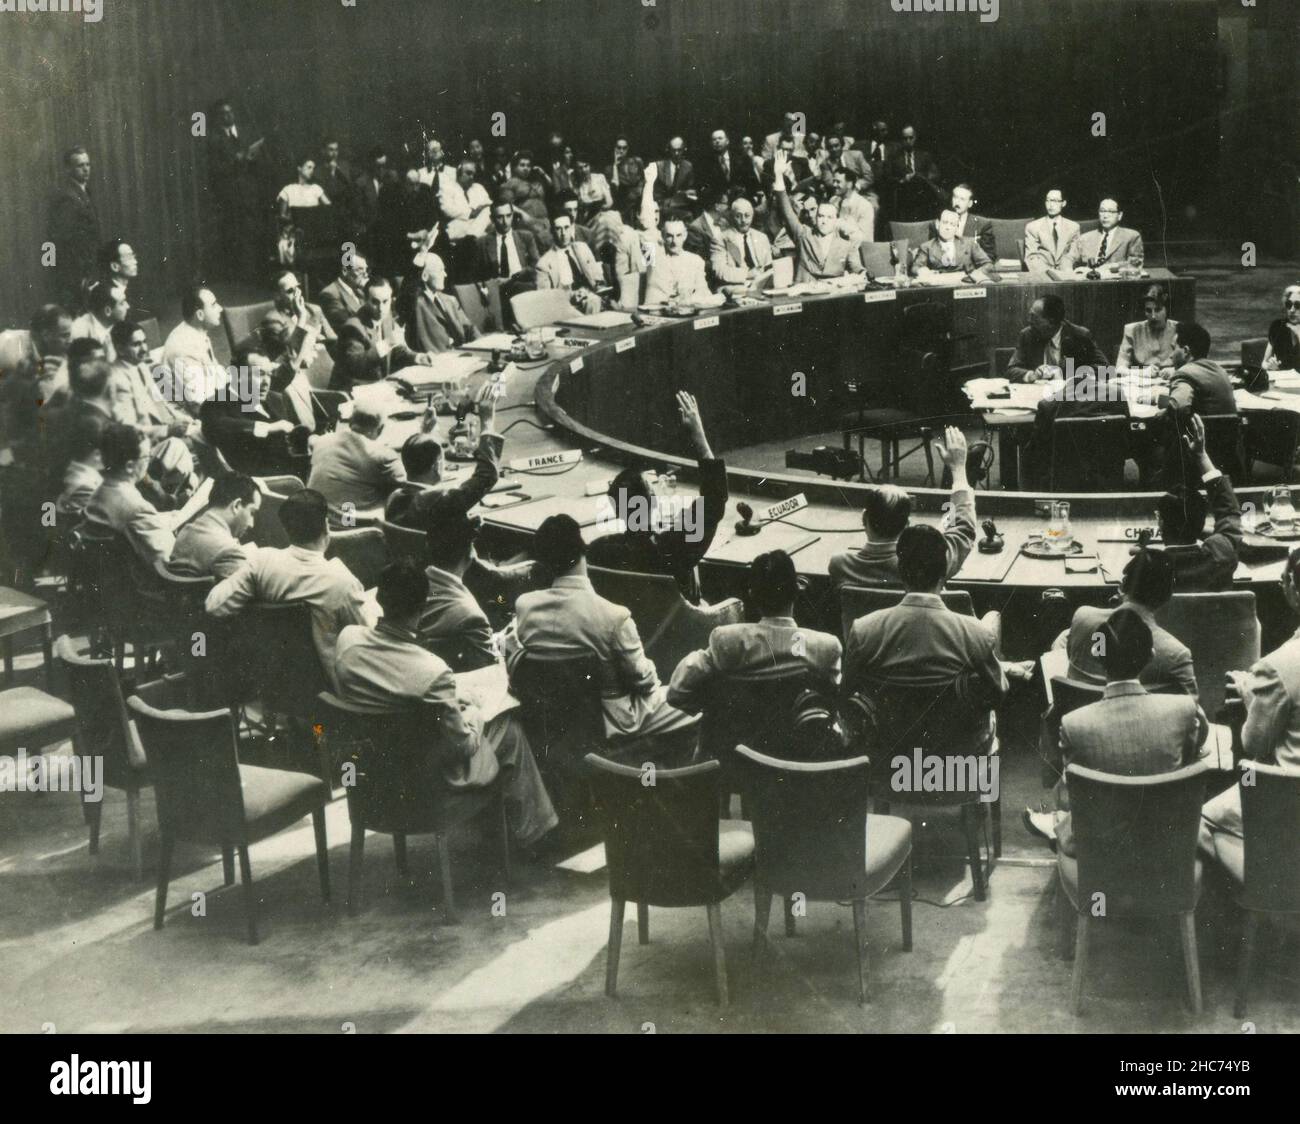 Votando la risoluzione 82 per l'intervento in Corea dopo che il rappresentante sovietico ha lasciato la stanza al Consiglio di sicurezza delle Nazioni Unite, New York, USA 1950 Foto Stock